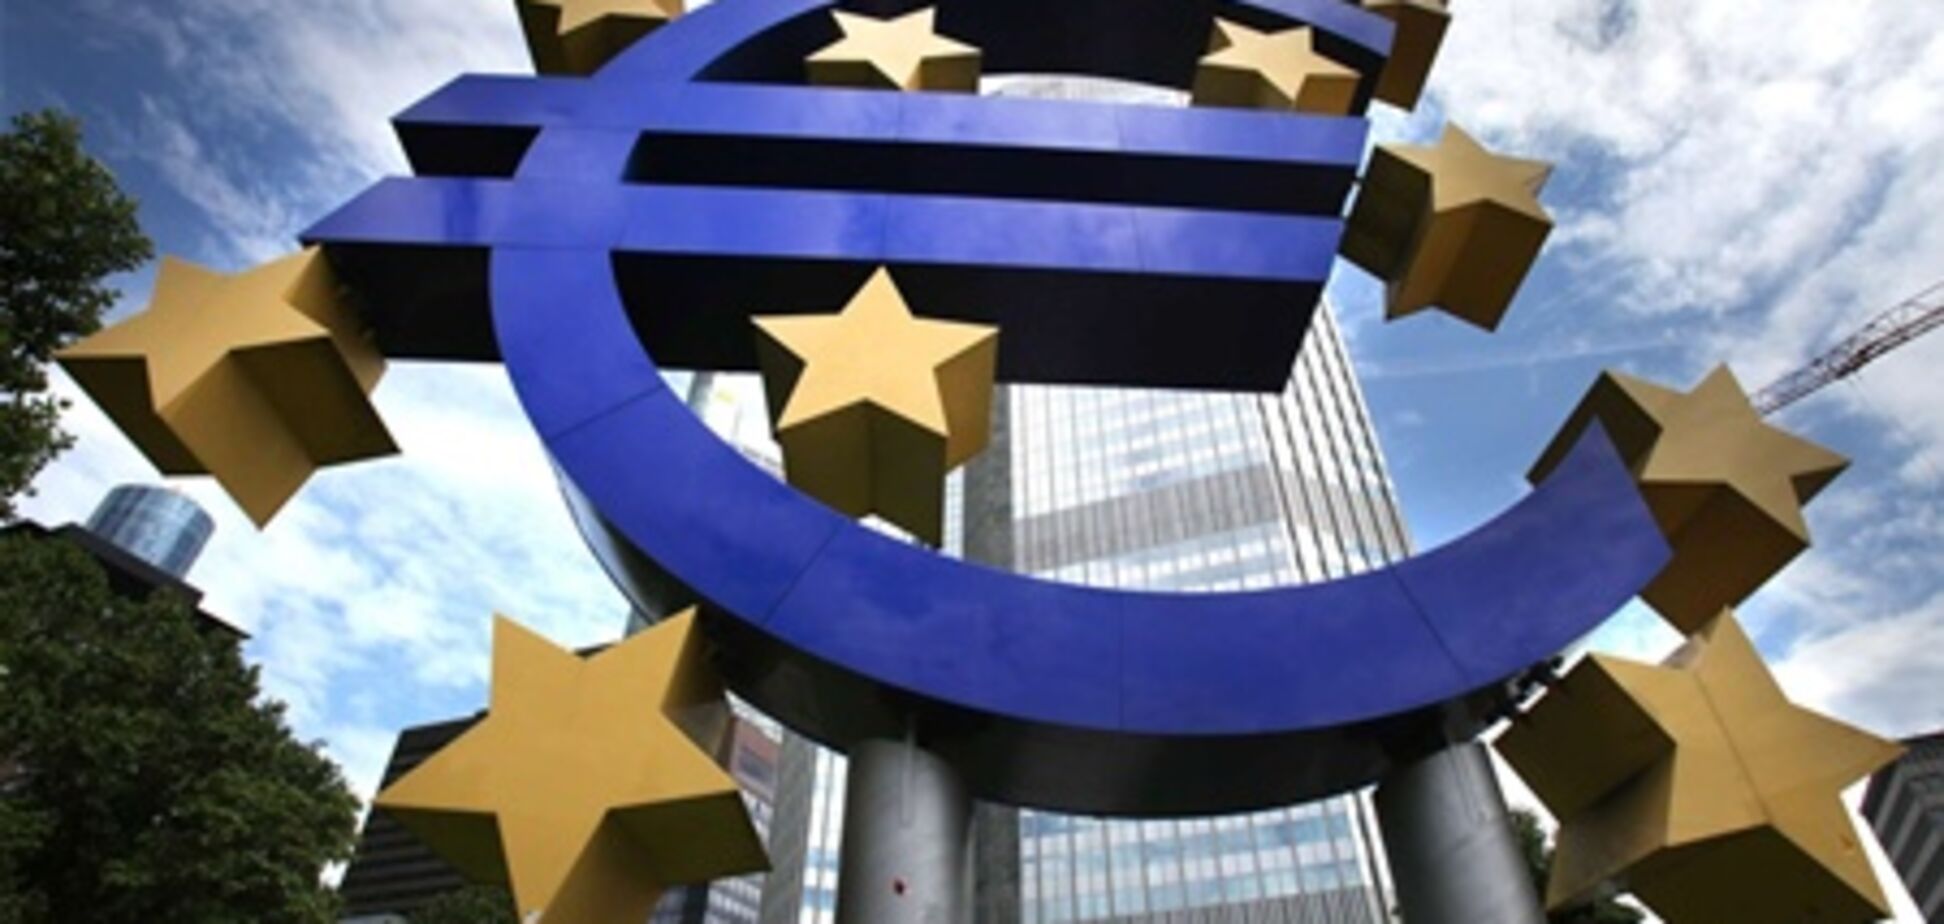 Англия не планирует вступать в еврозону